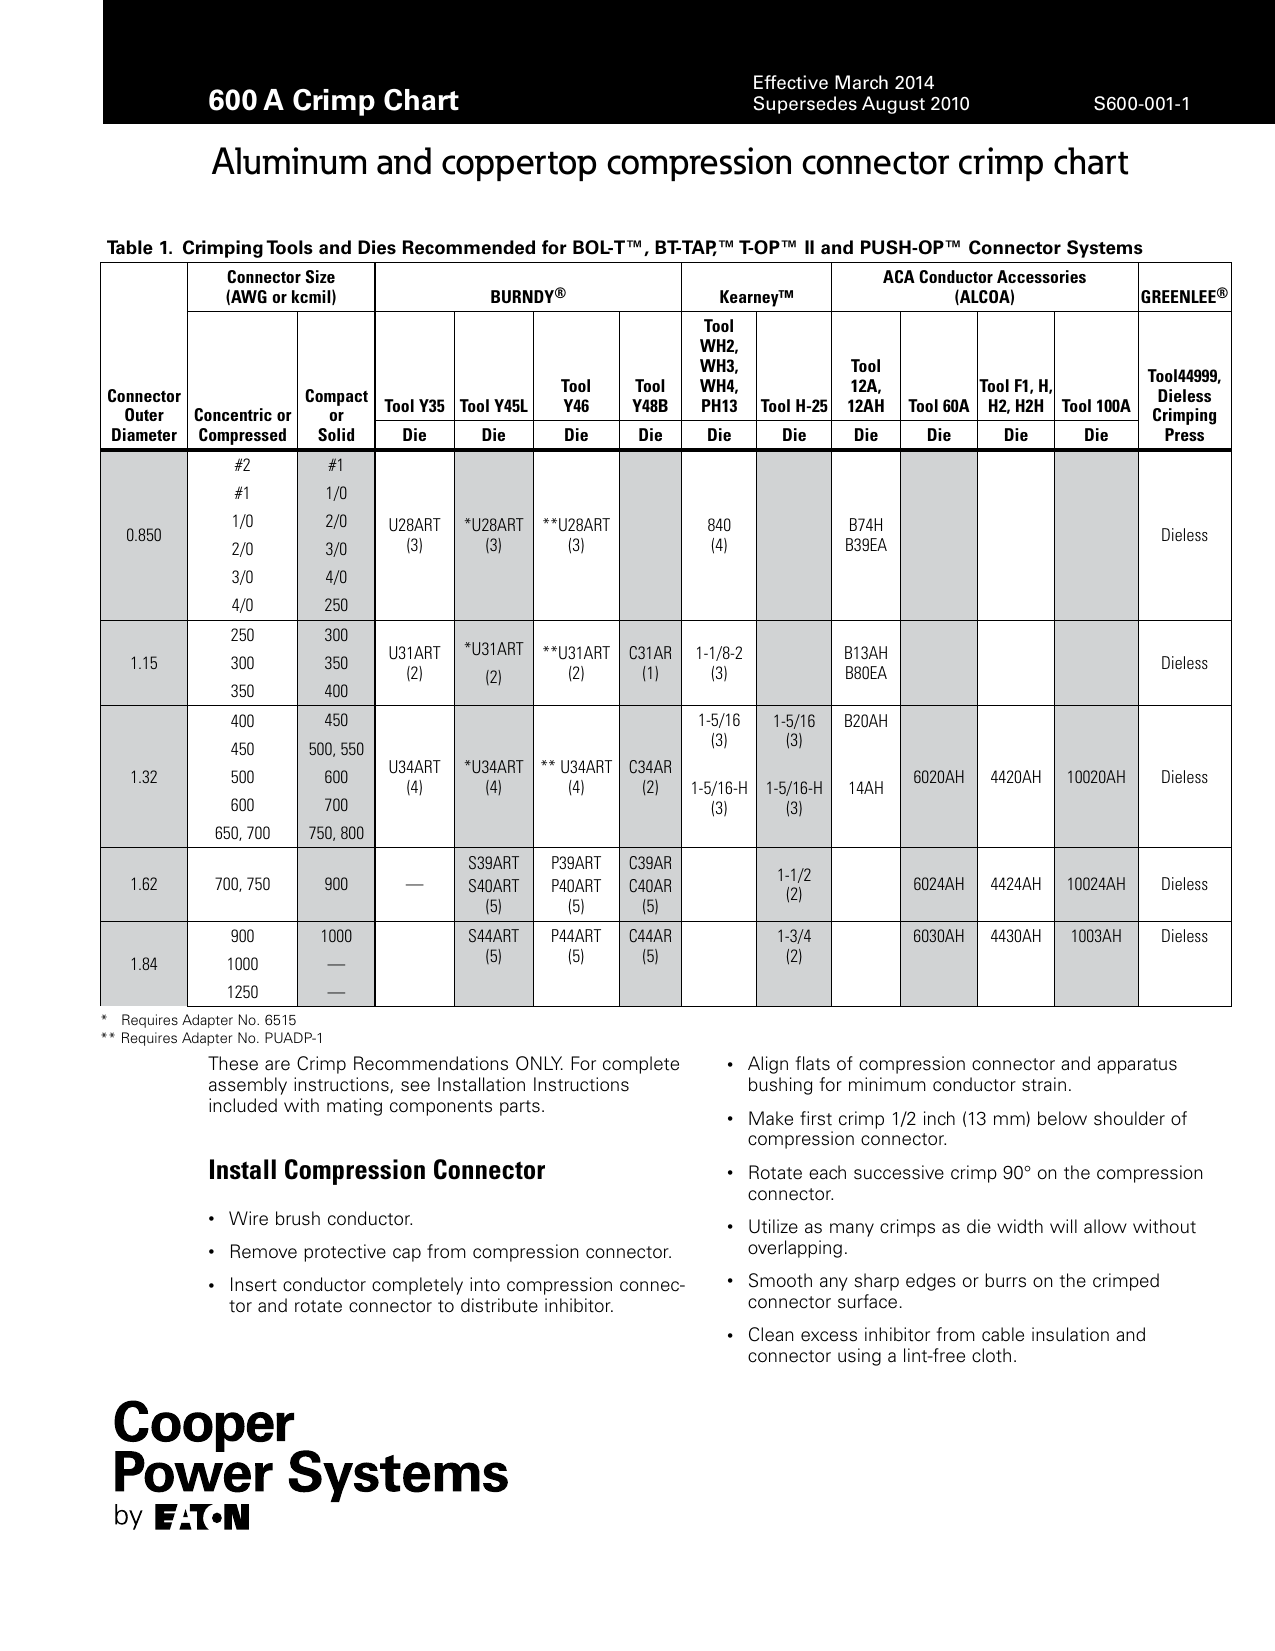 aluminum-and-coppertop-compression-connector-crimp-chart